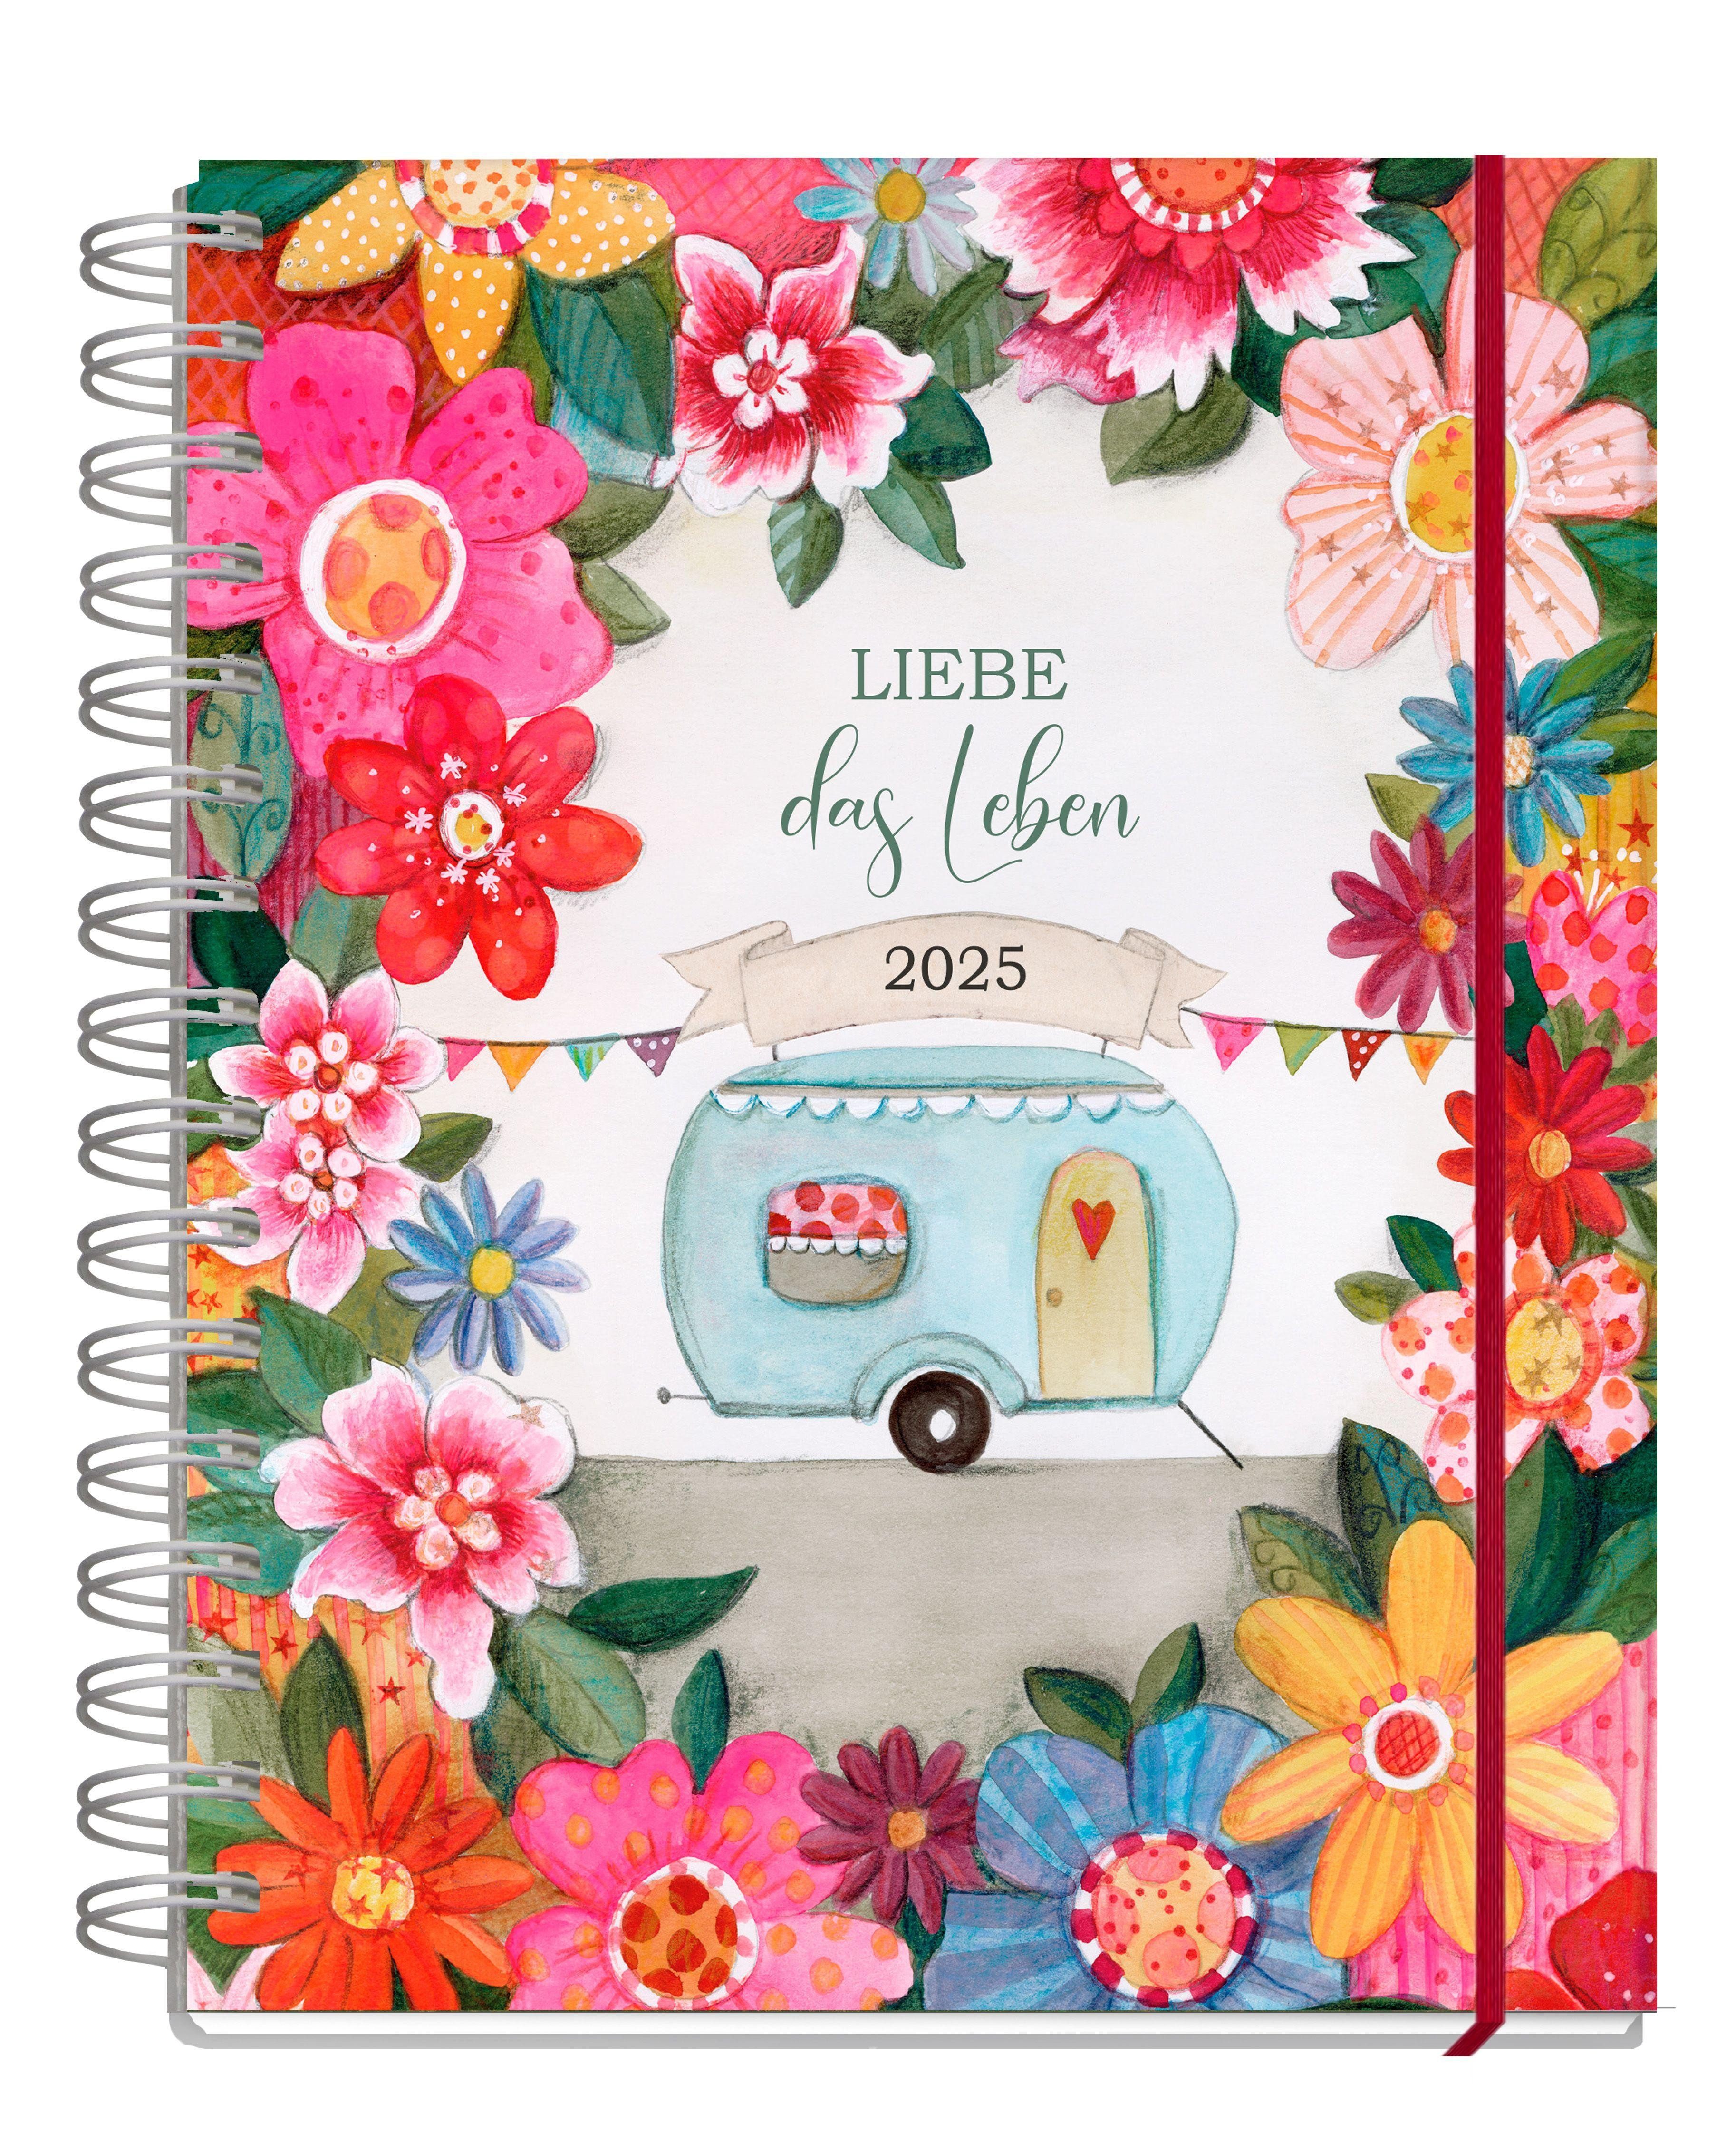 Grätz Verlag Terminkalender Taschenkalender 2025, Liebe das Leben